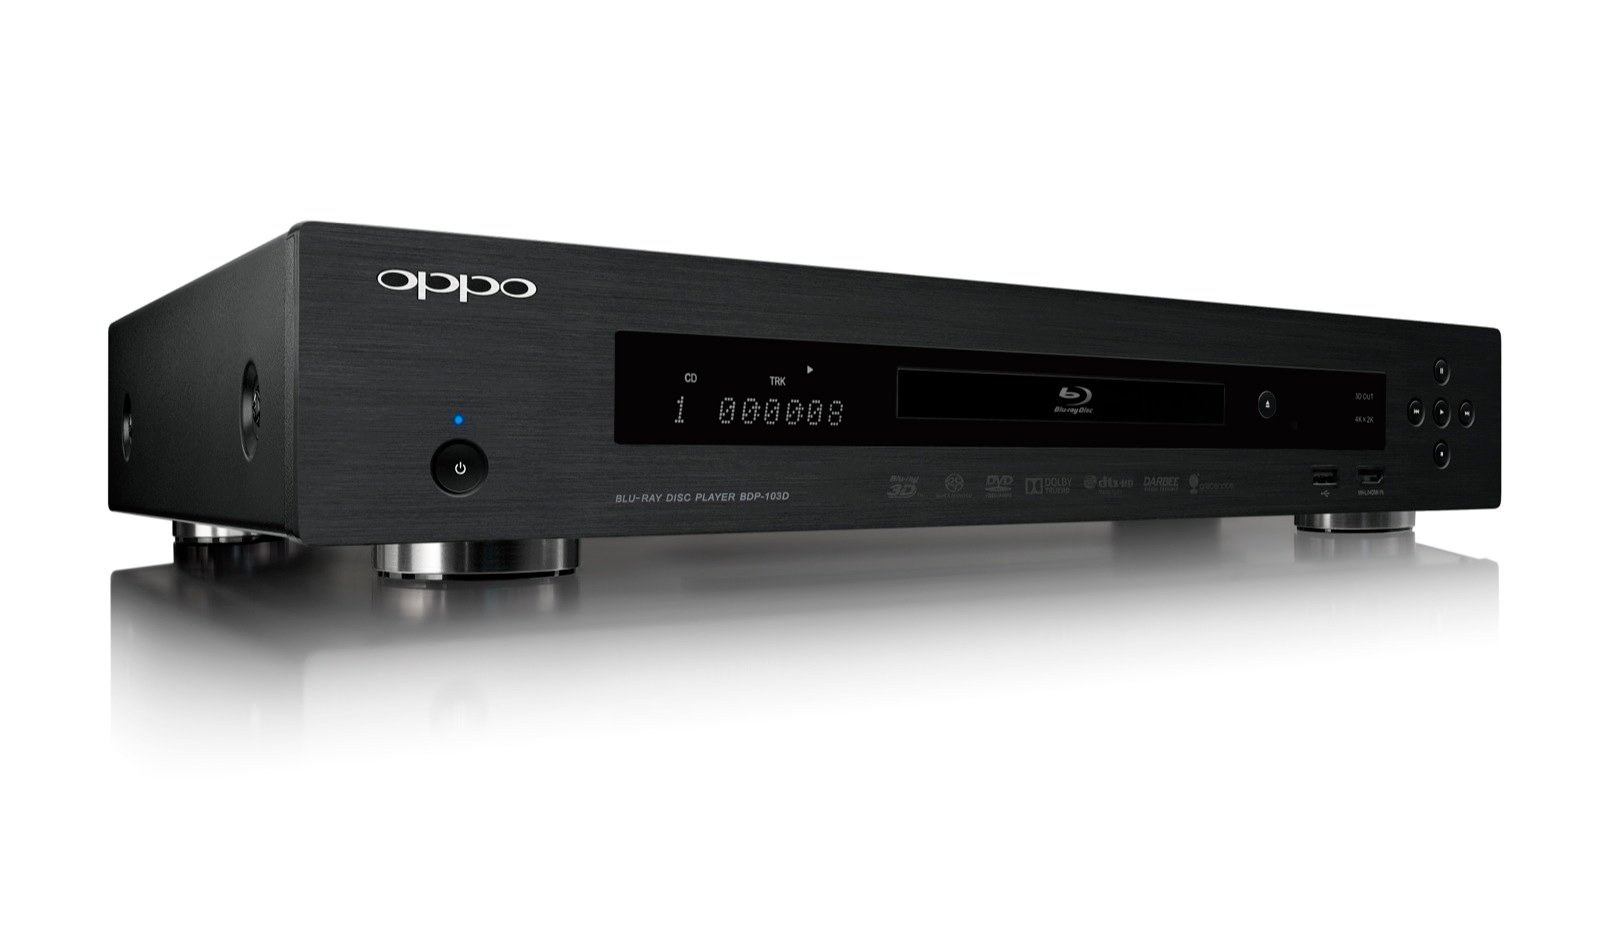 Der neue OPPO BDP-103D mit Darbee Video Processing